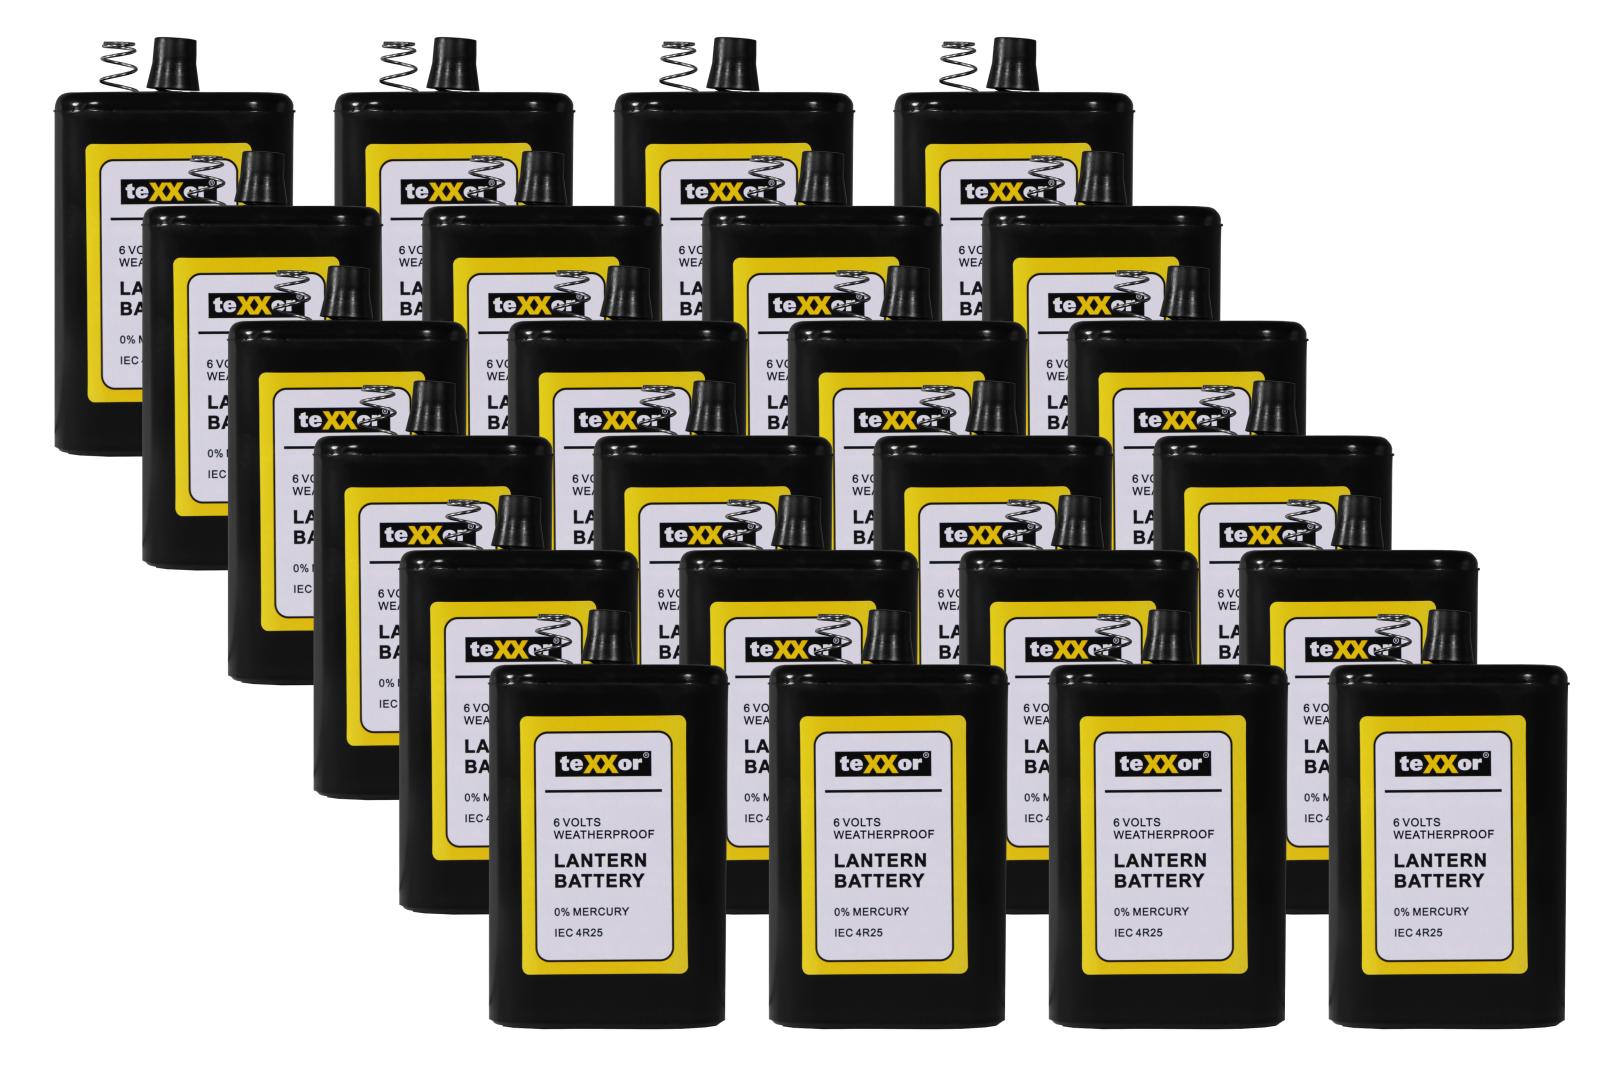 teXXor 3600 Hochleistungsbatterie, Blockbatterie, Trockenbatterie, 6 V, 7 Ah, 24 Stück im Karton